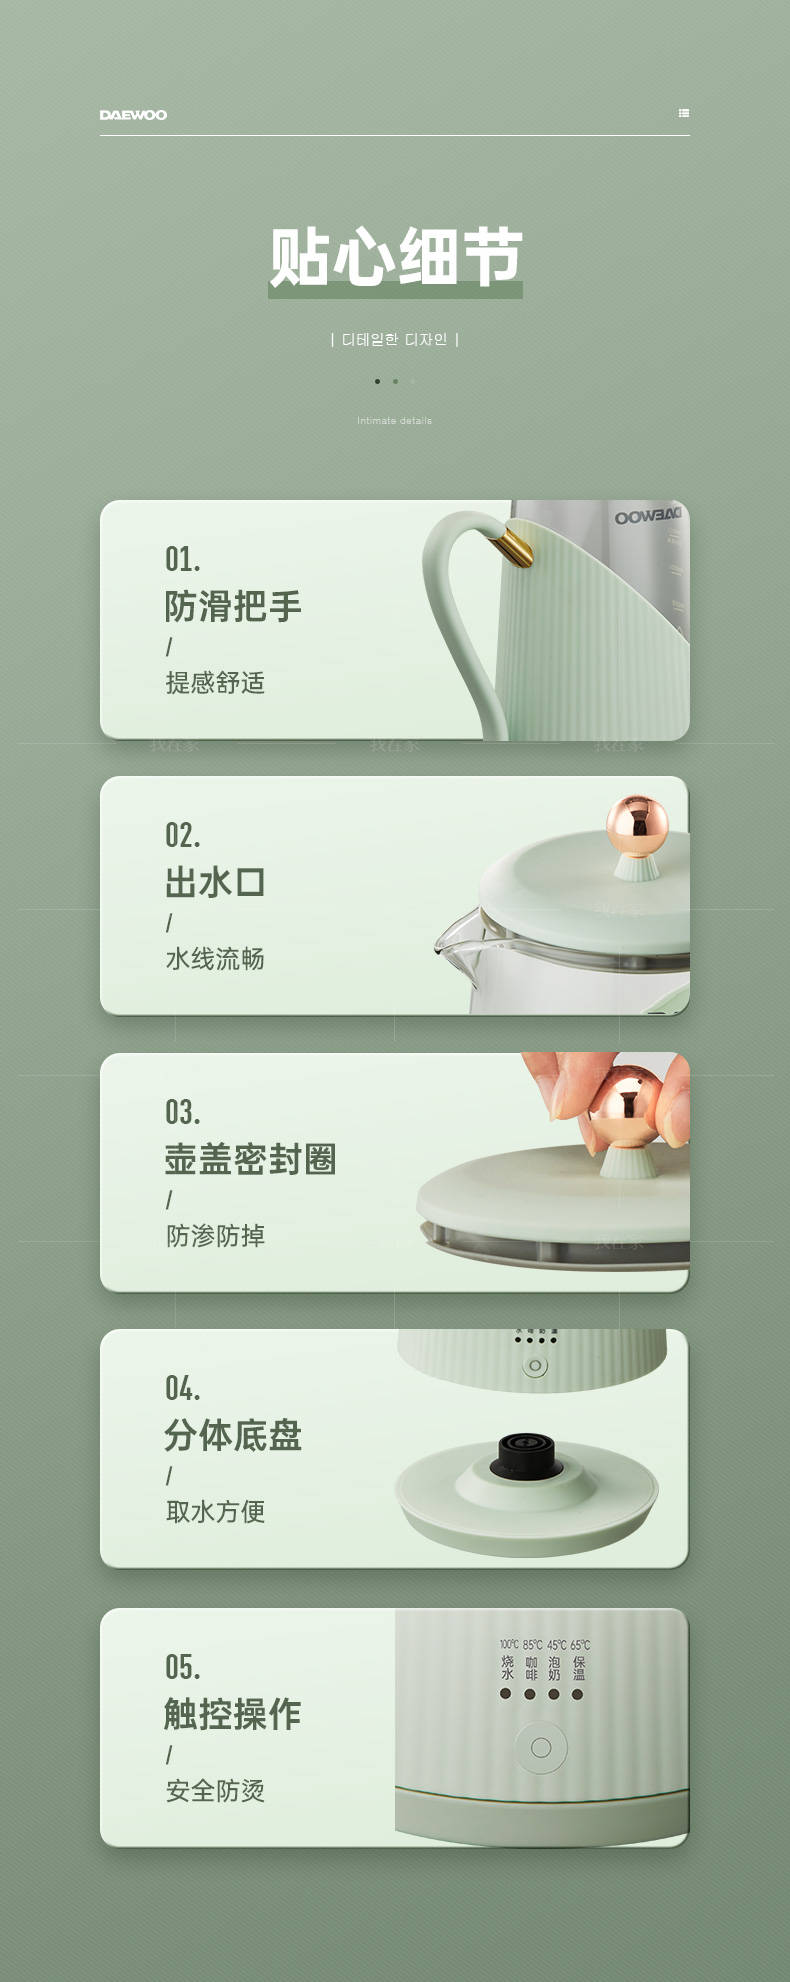 鲸喜系列韩国大宇1.2L电水壶的详细介绍